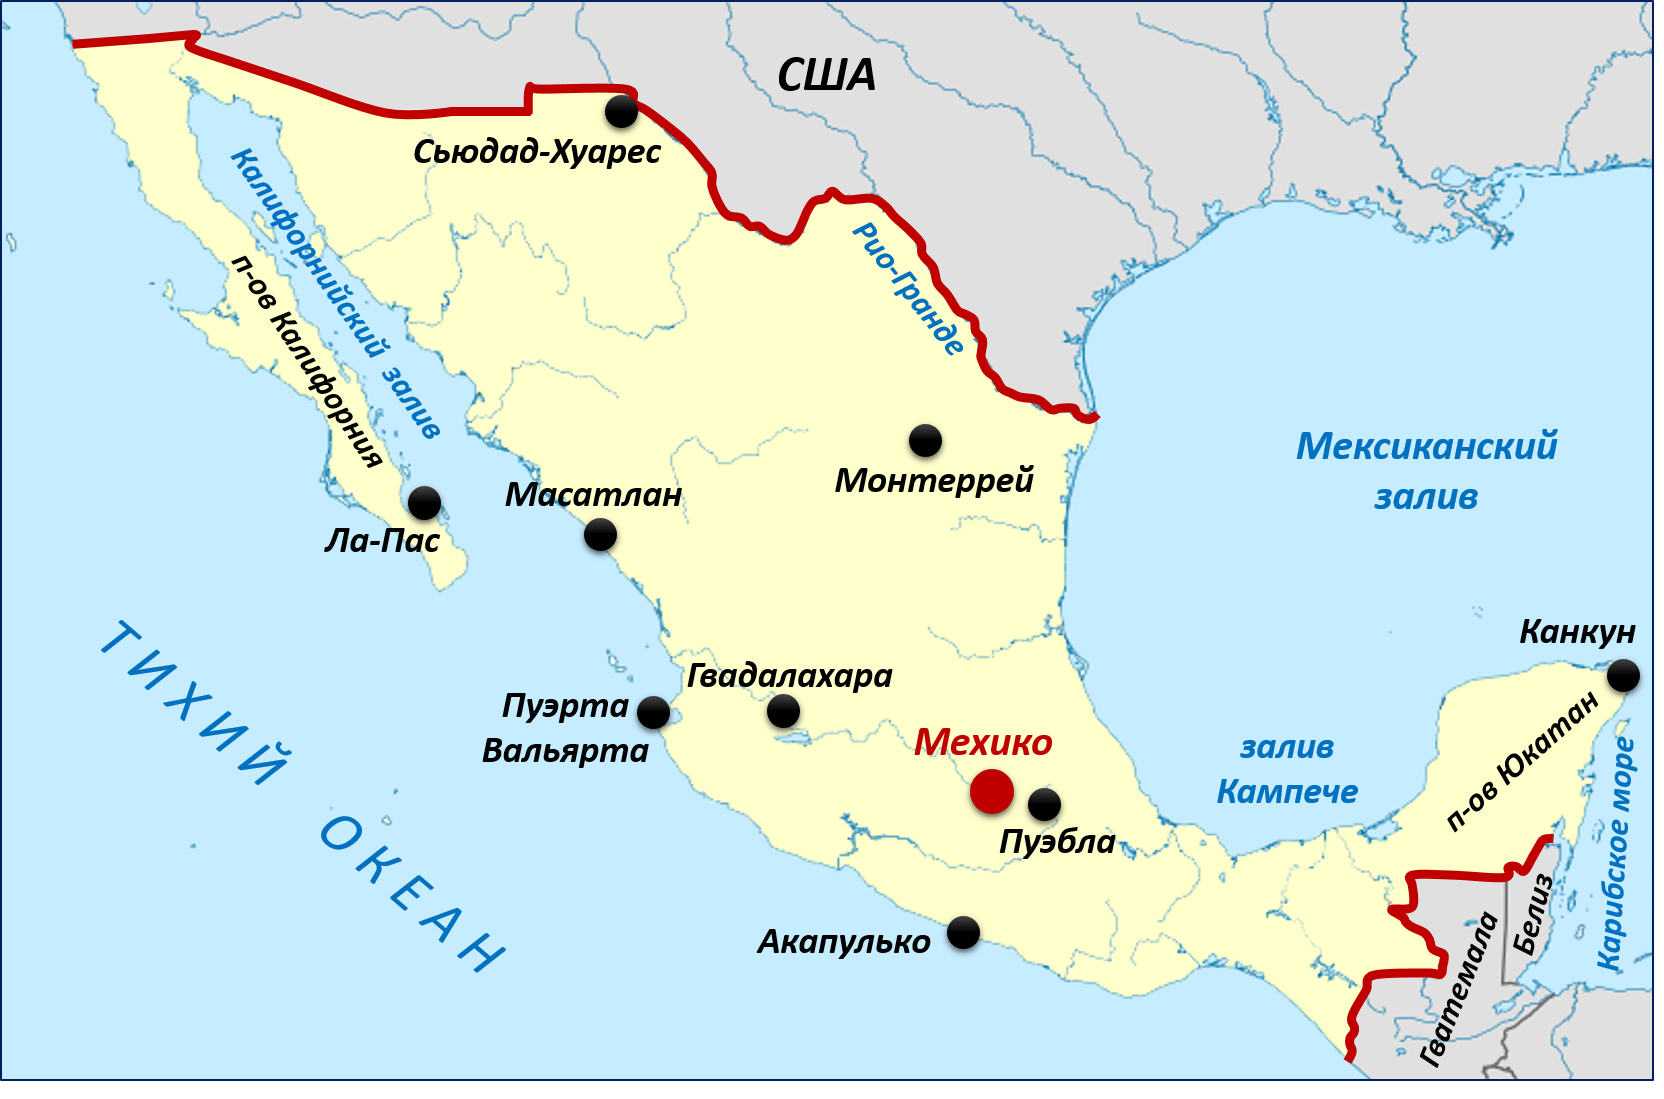 Столица страны мексика географические координаты. Мексика омывается. Калифорнийский залив на карте Северной Америки. Мексиканский залив на карте океанов. Побережье мексиканского залива США на карте.